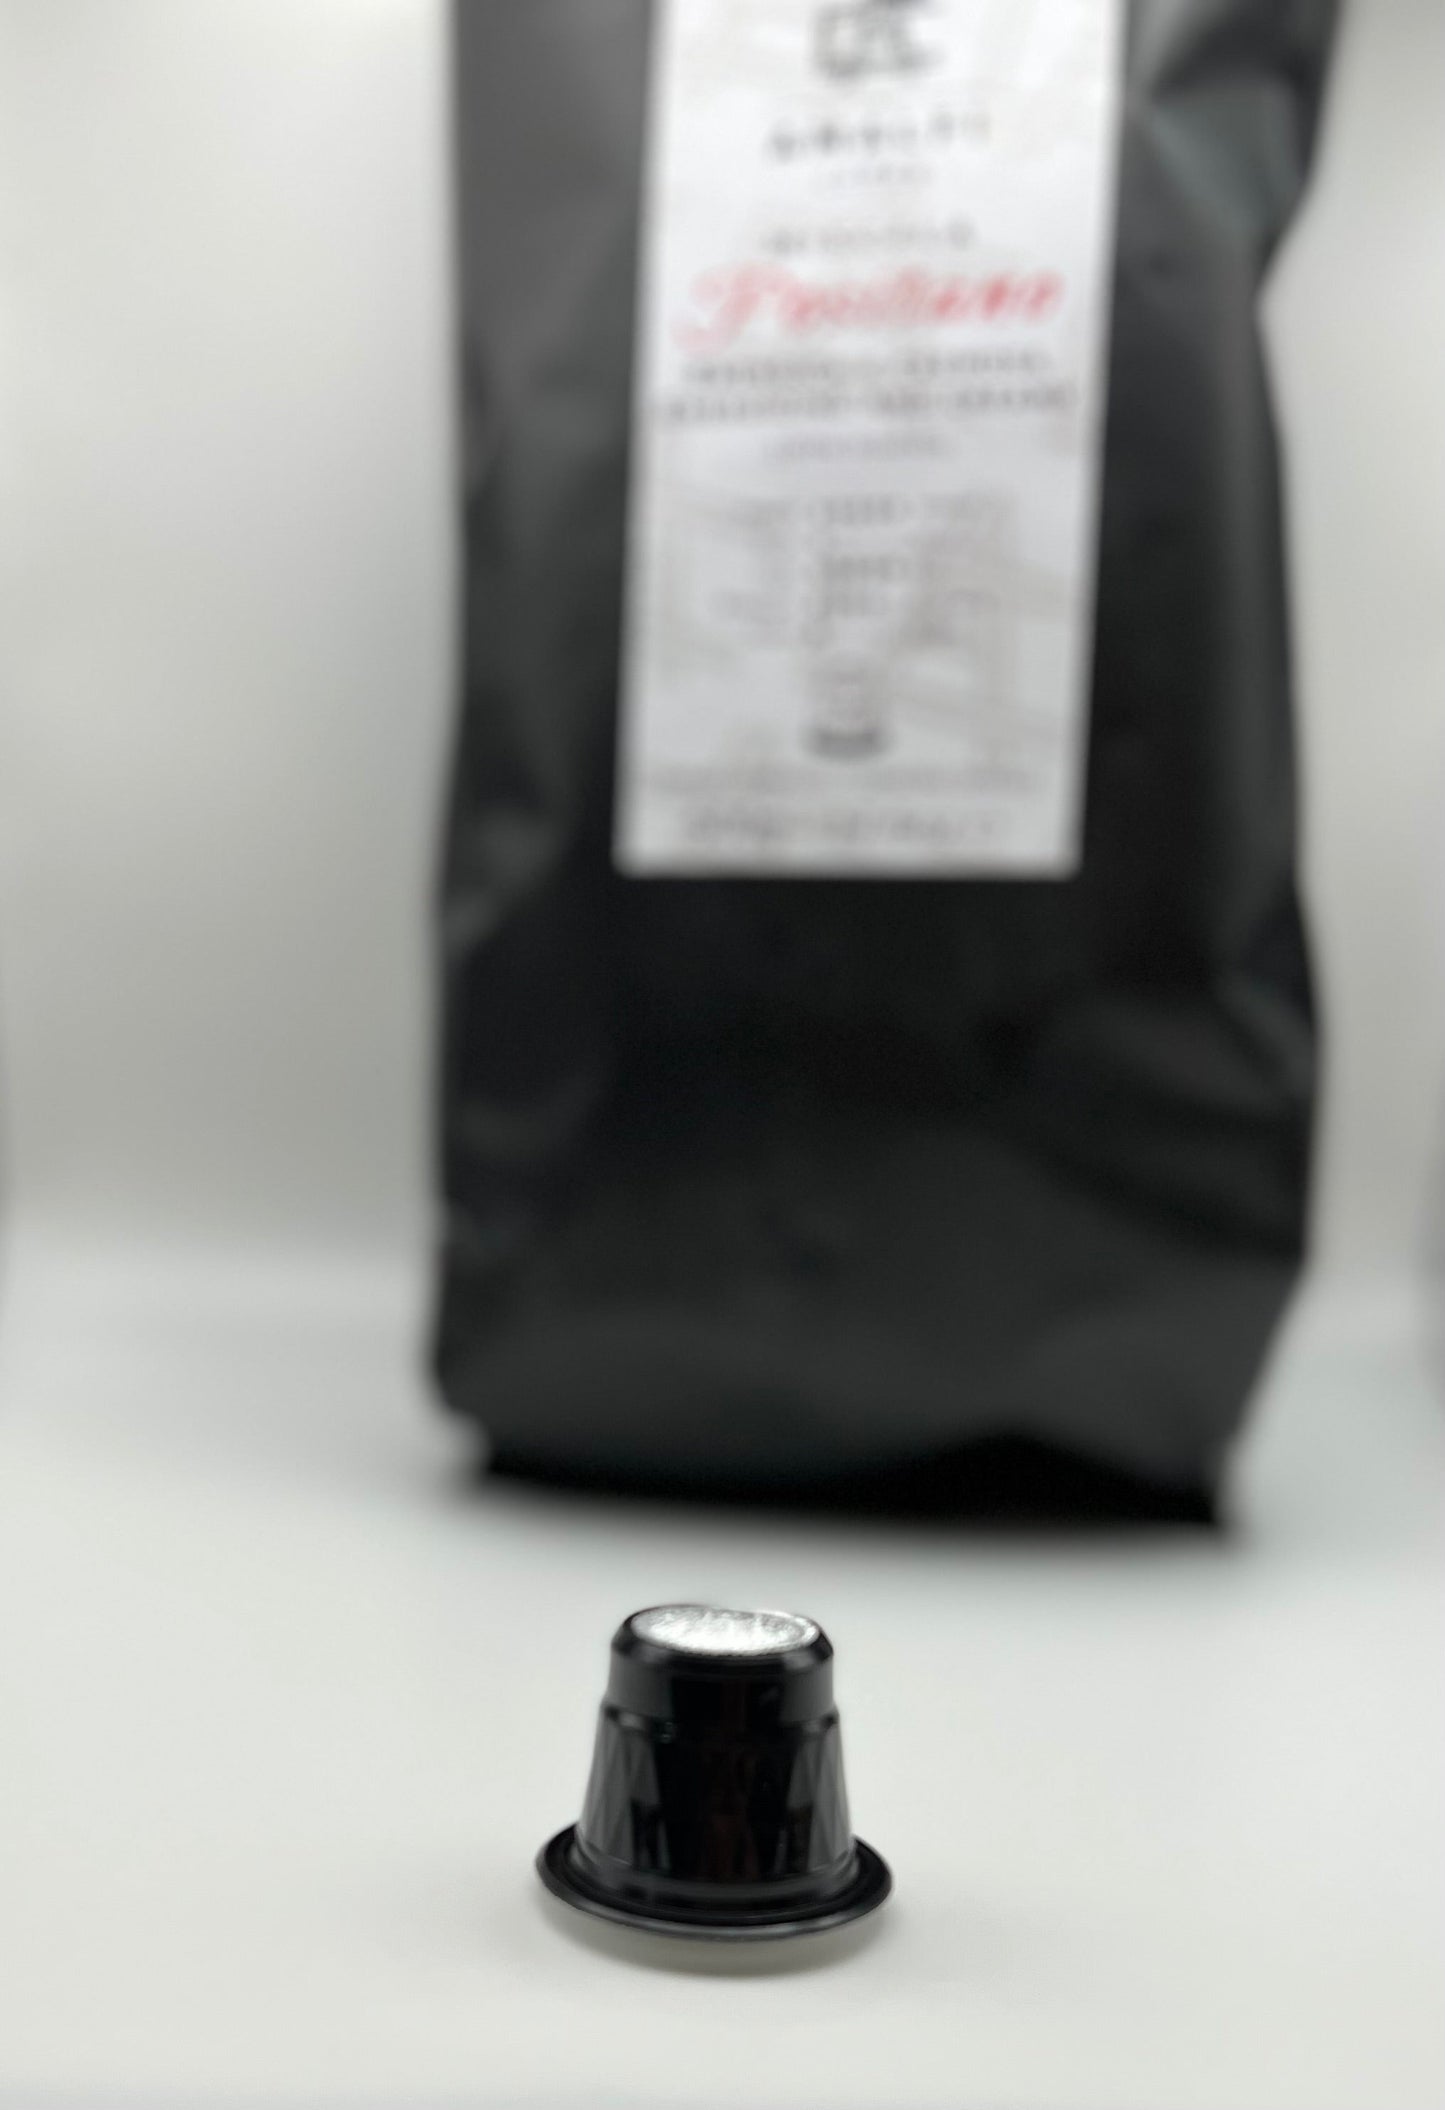 Amalfi Coffee Fine Italian Espresso Capsules, 50 Coffee Pods Pack, Single Cup Coffee Capsule, Nespresso Original Compatible Capsules (Ravello Coffee Capsules)